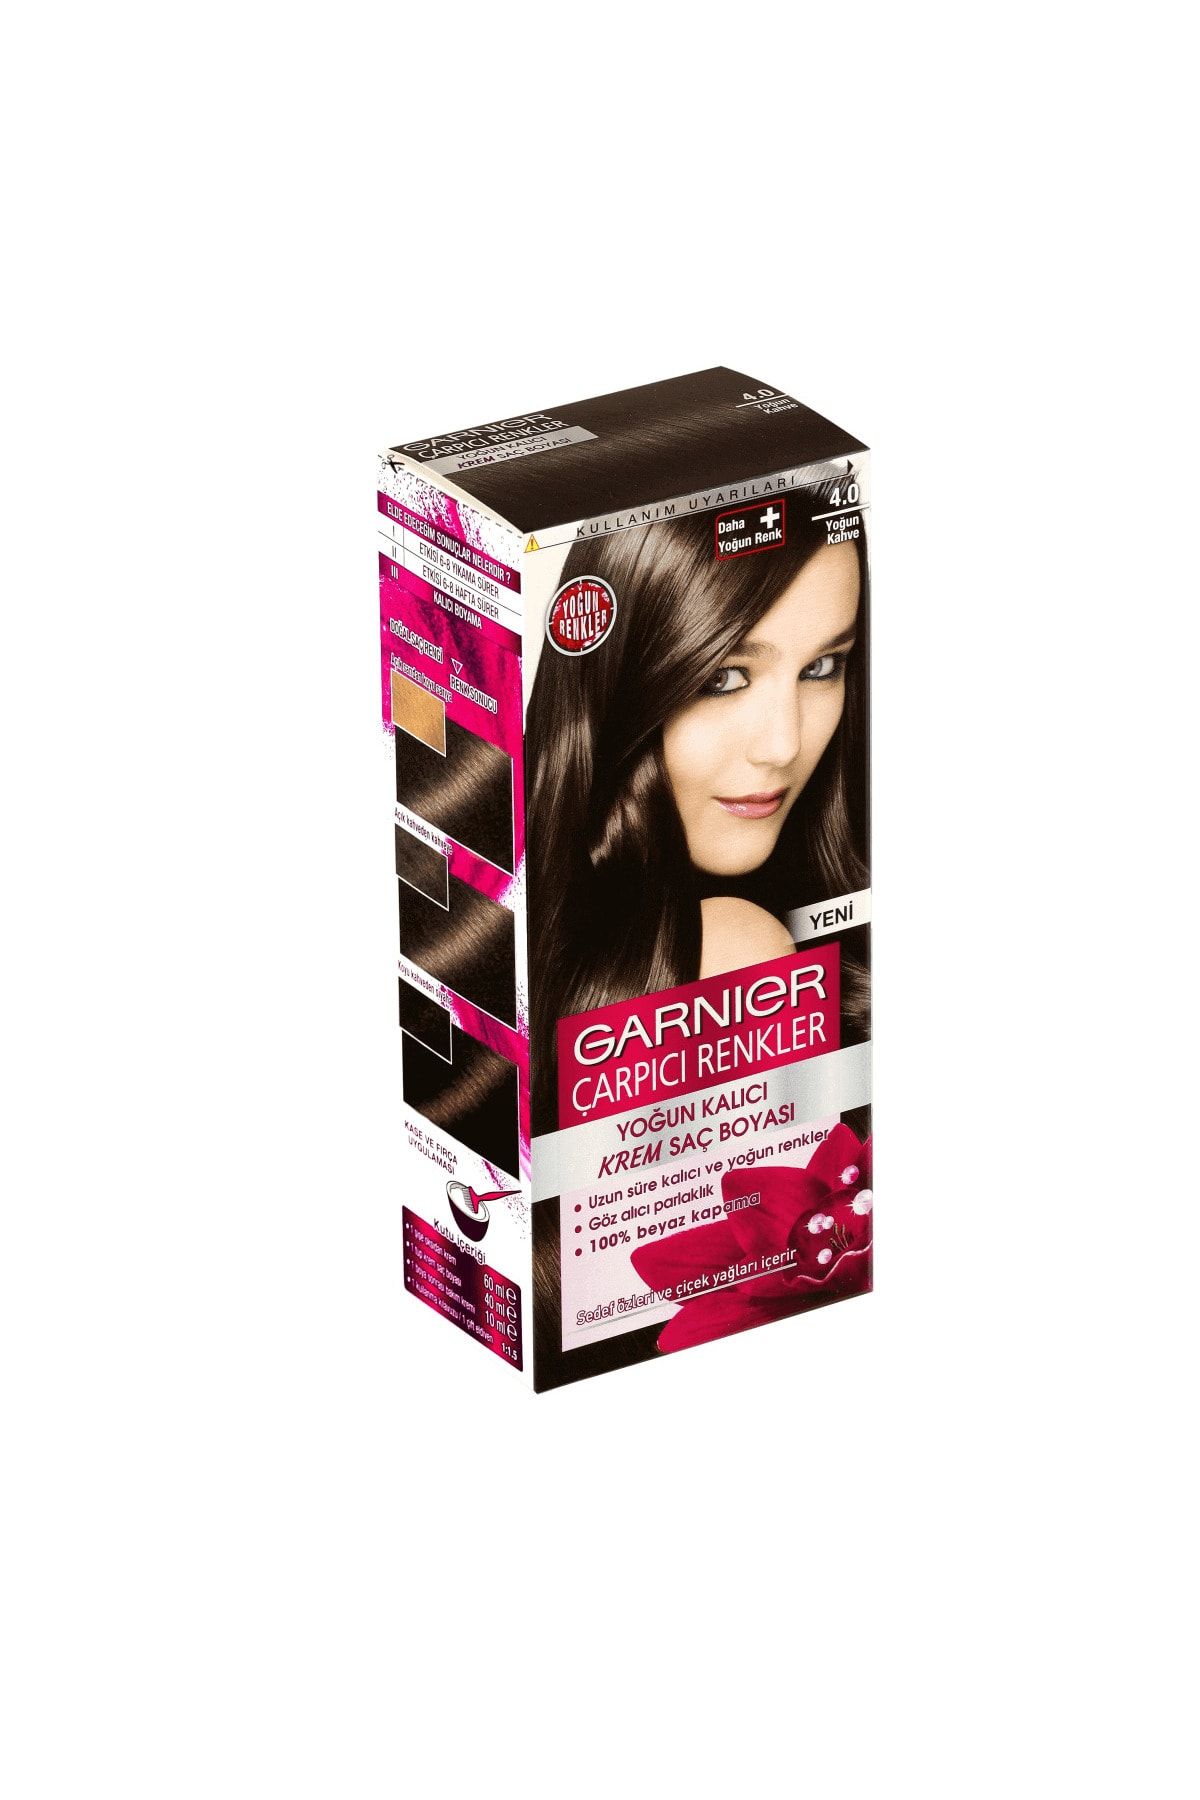 Garnier Yoğun Kahve No. 4,0 Çarpıcı Renkler Saç Boyası